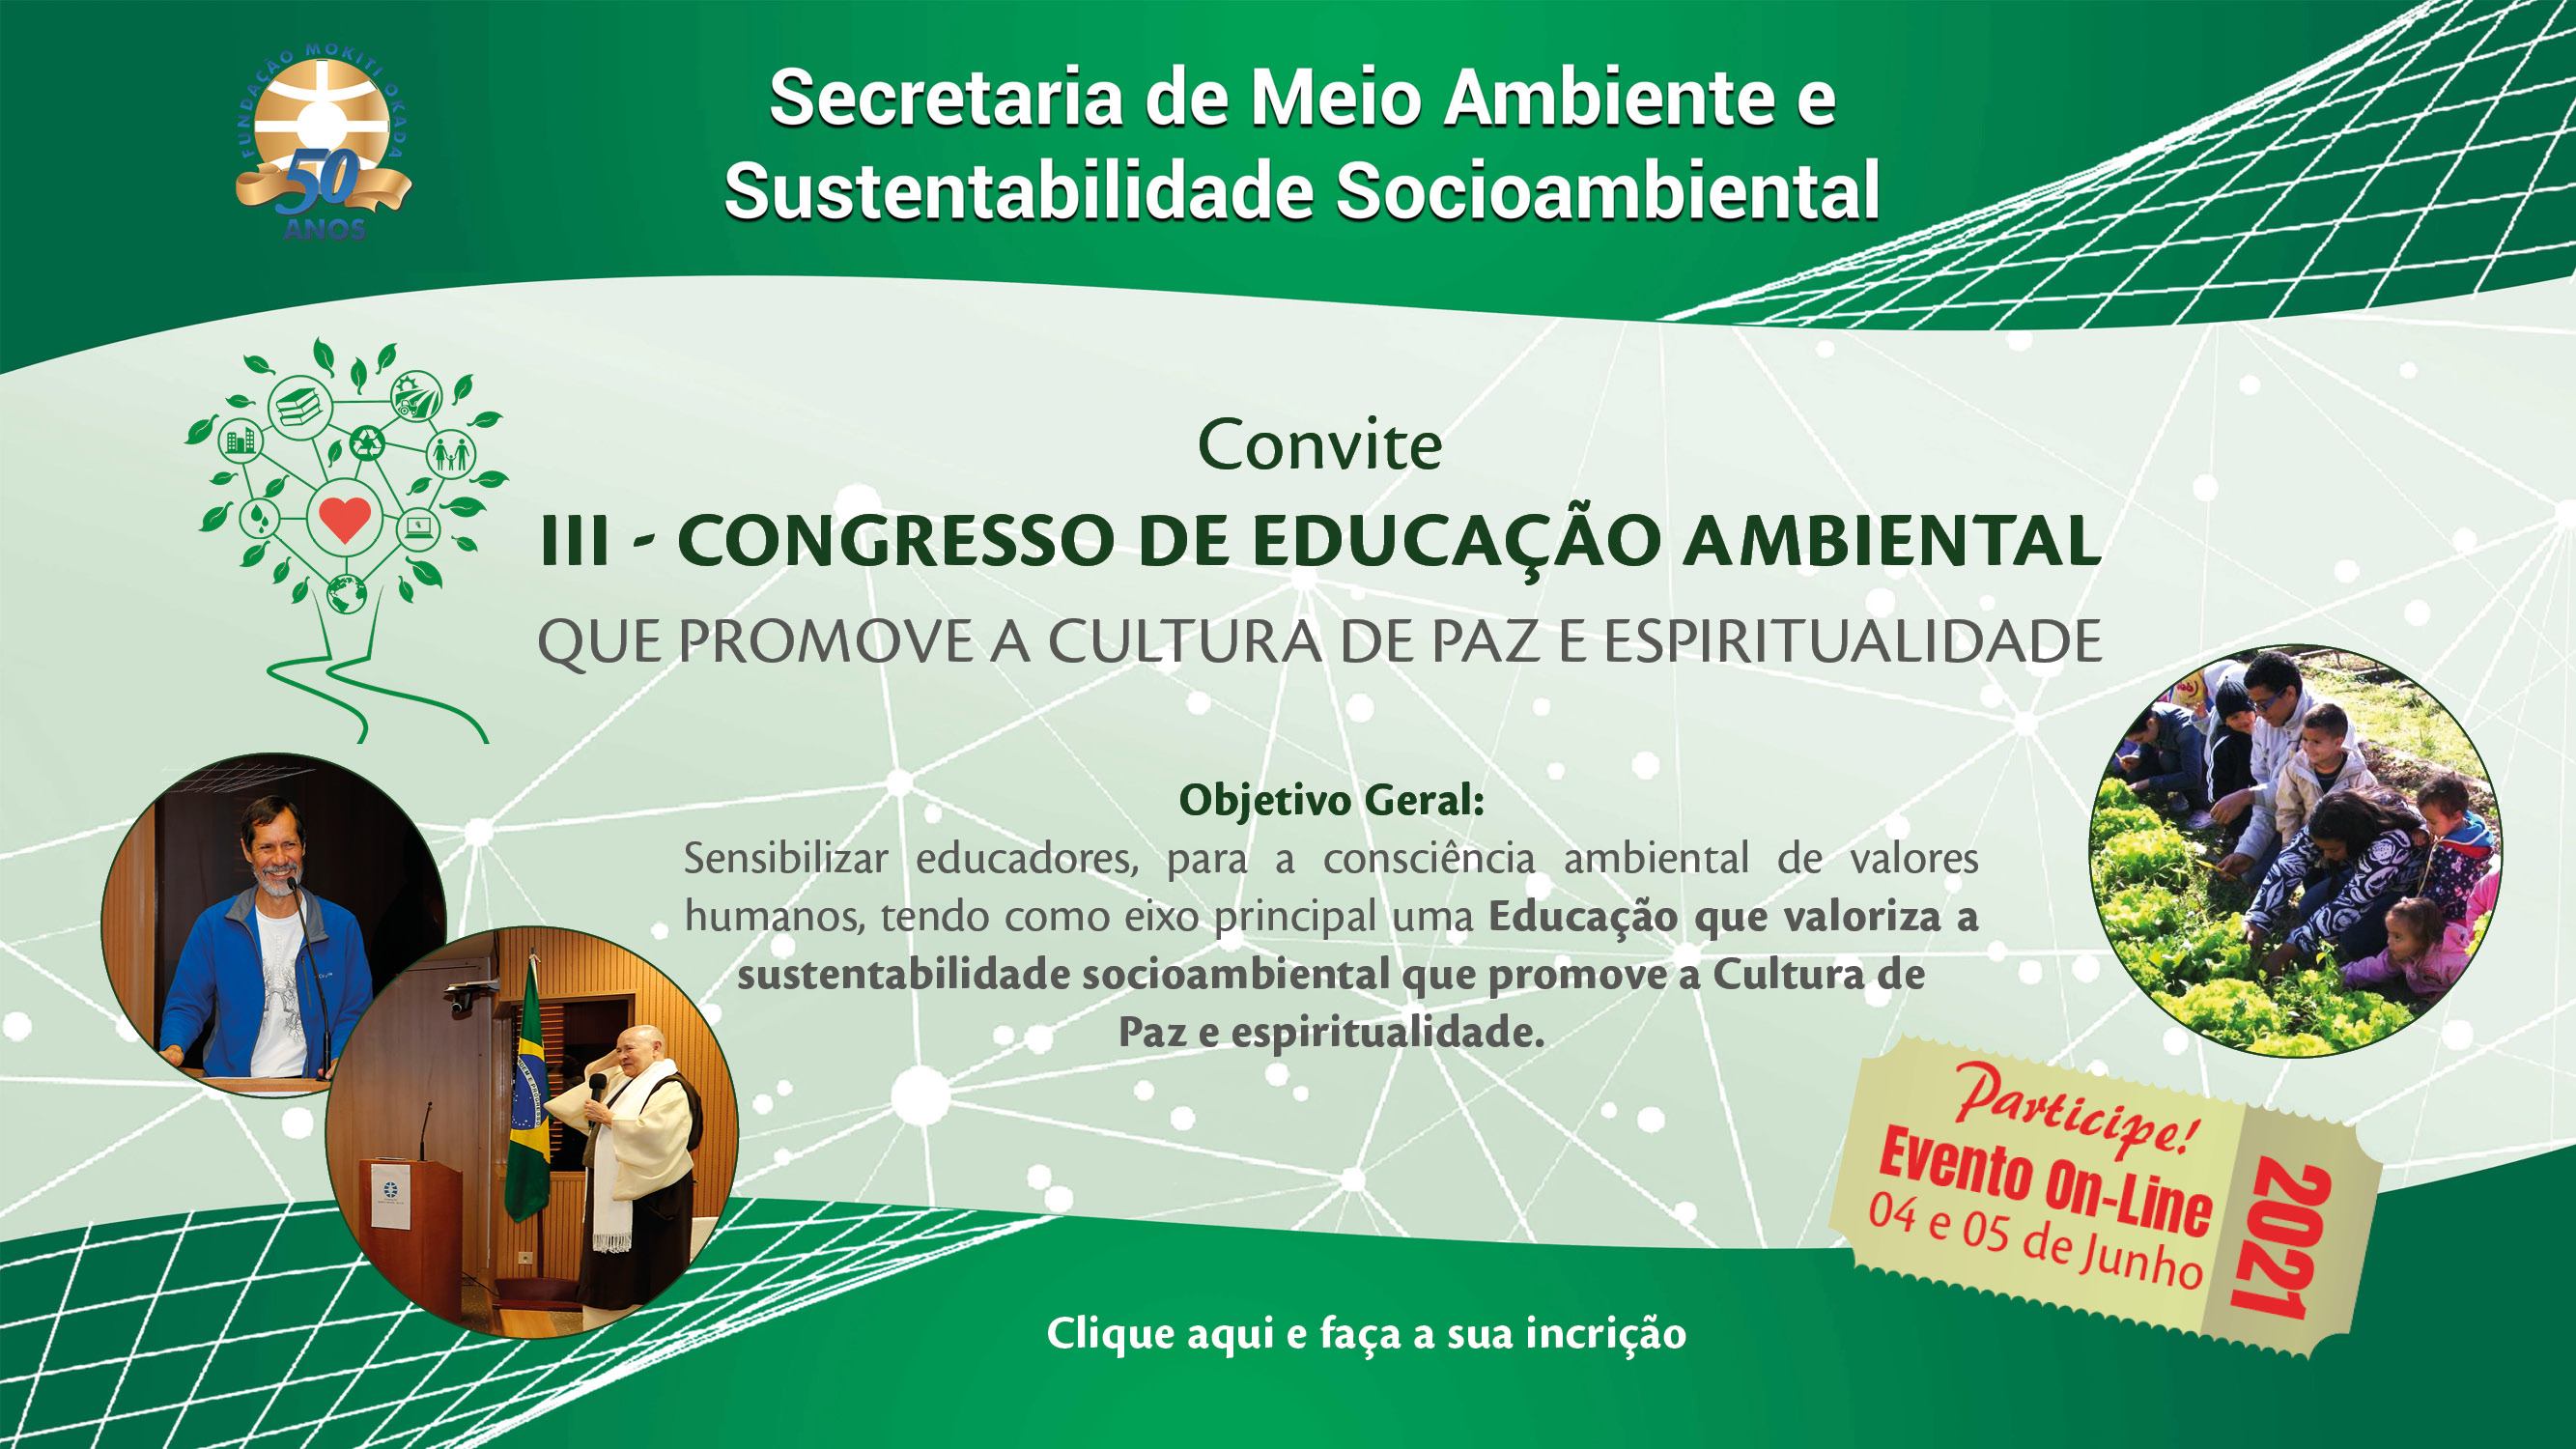 Evento on-line: Congresso de Educao Ambiental ocorrer em junho